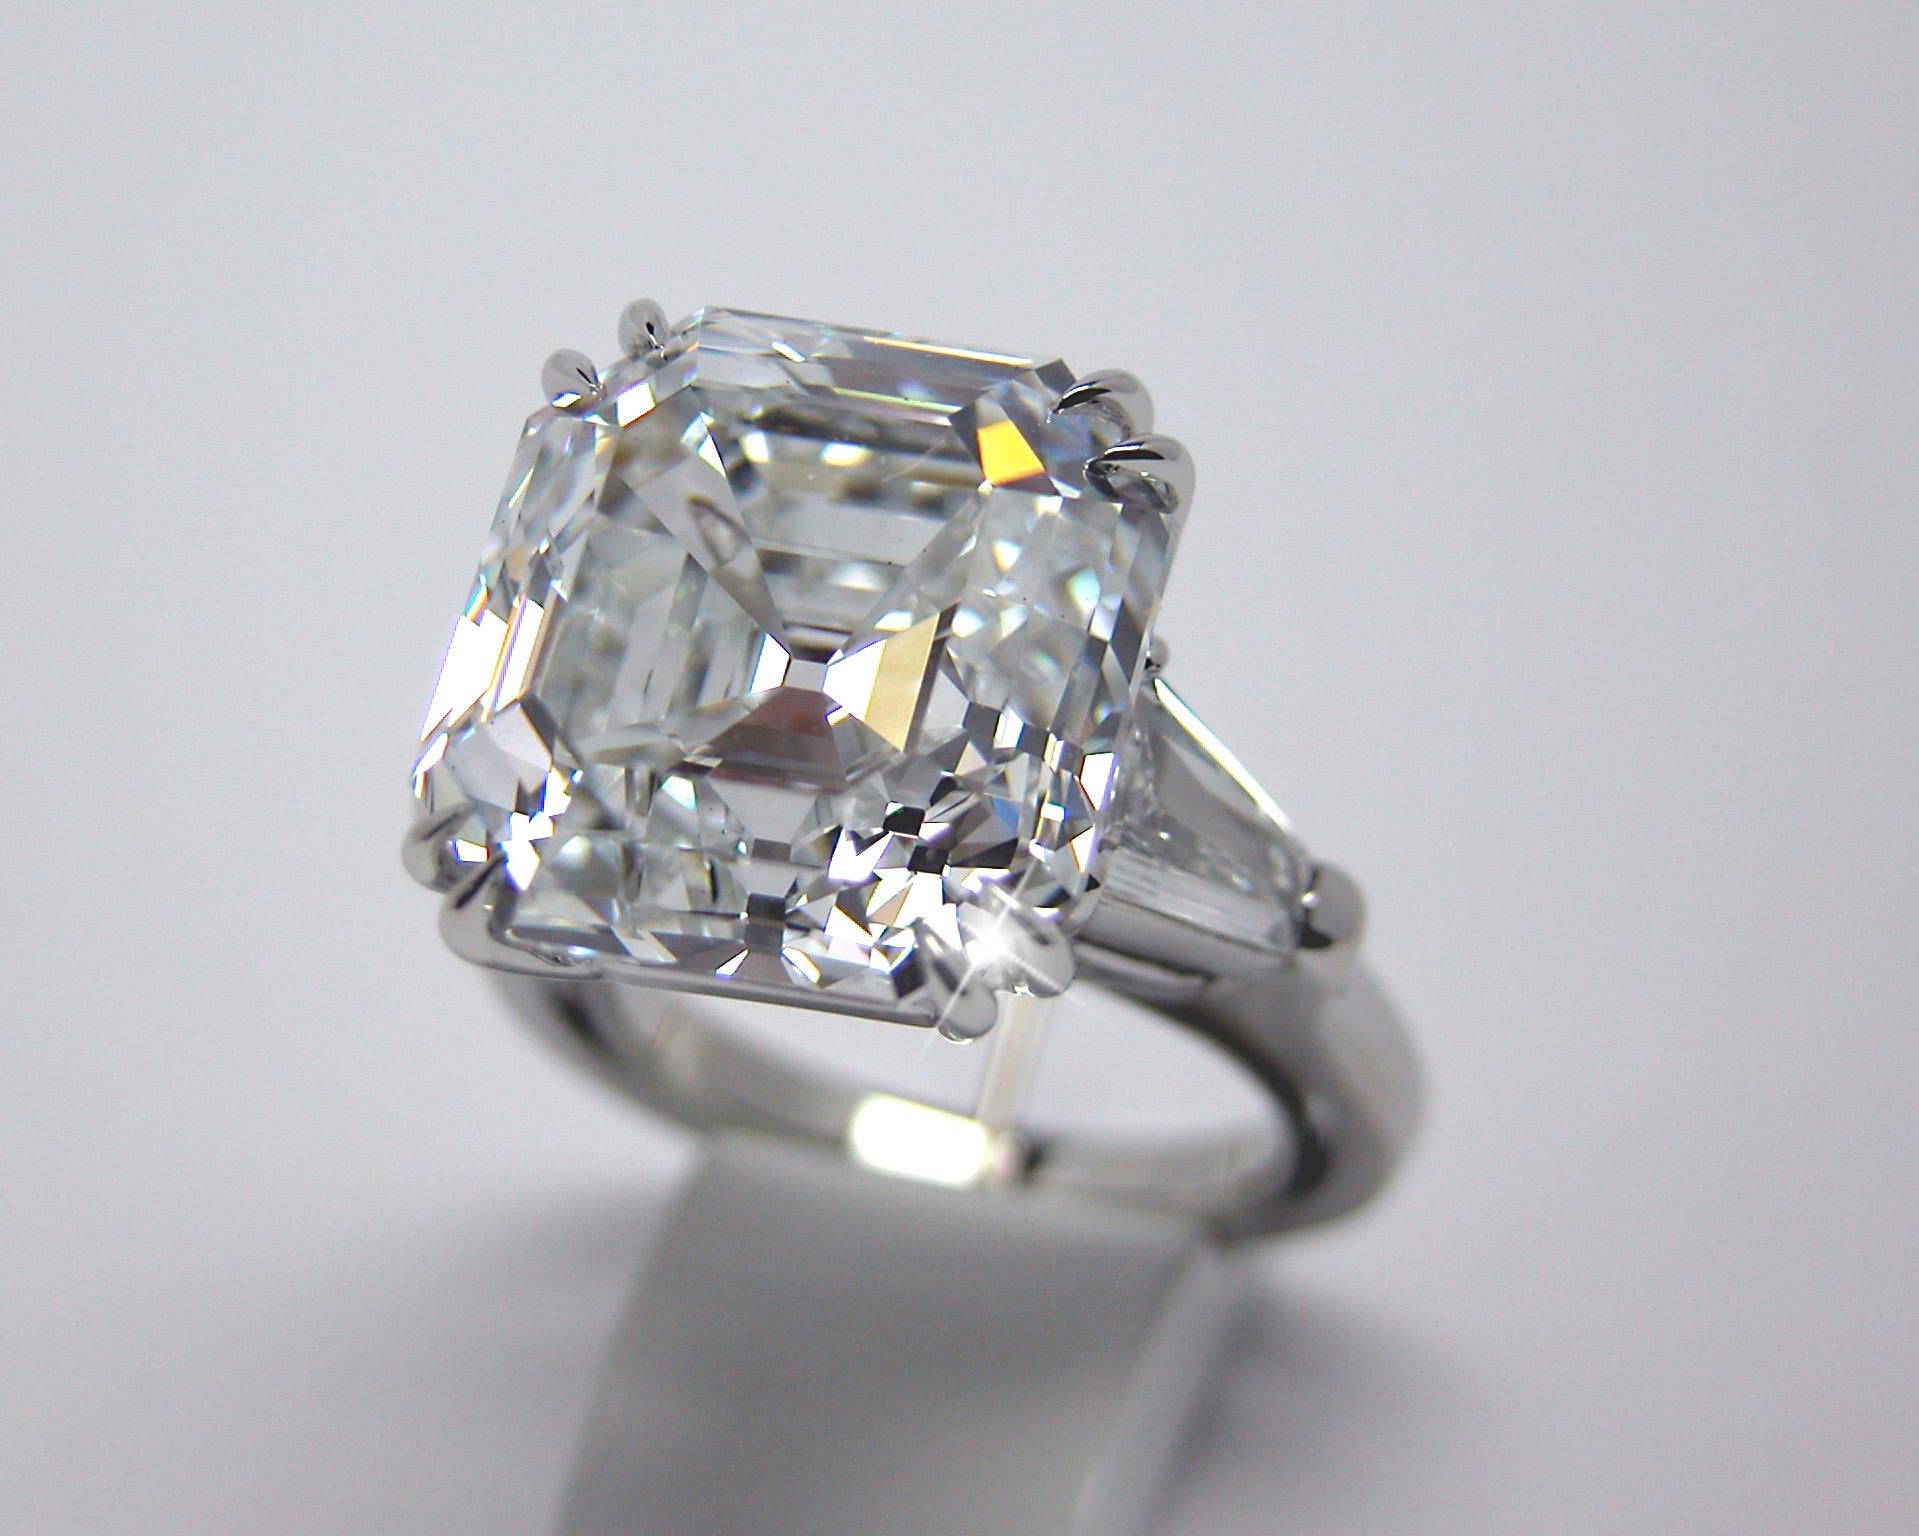 4 carat diamond emerald cut